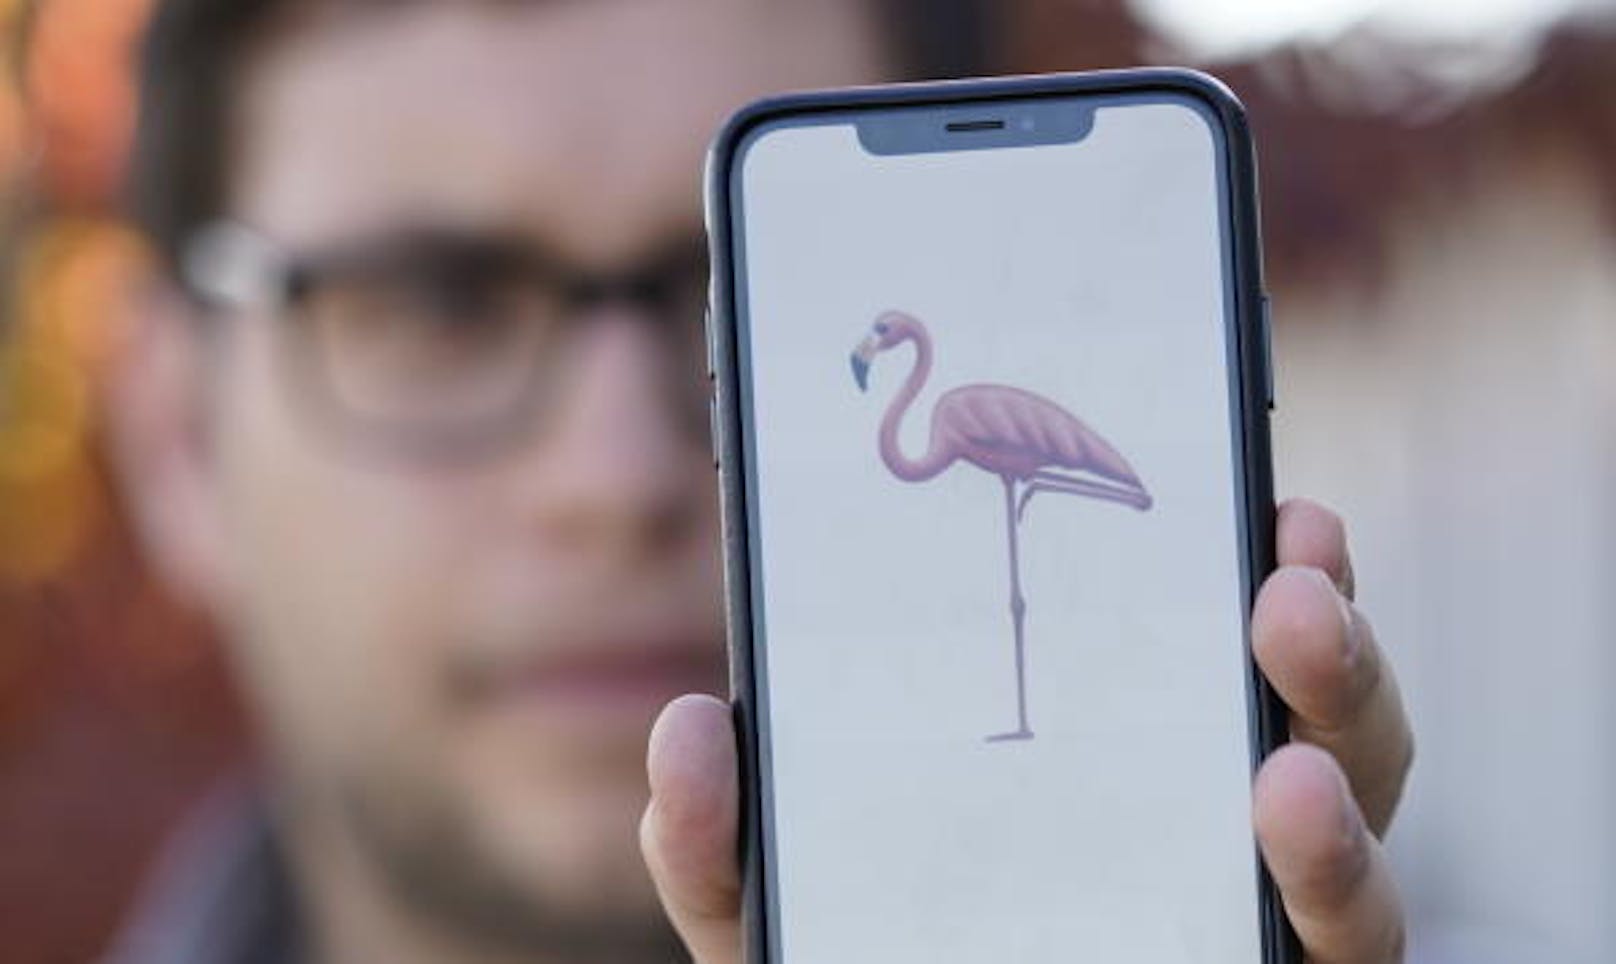 Versenden wir nächstes Jahr Flamingo-Emojis?